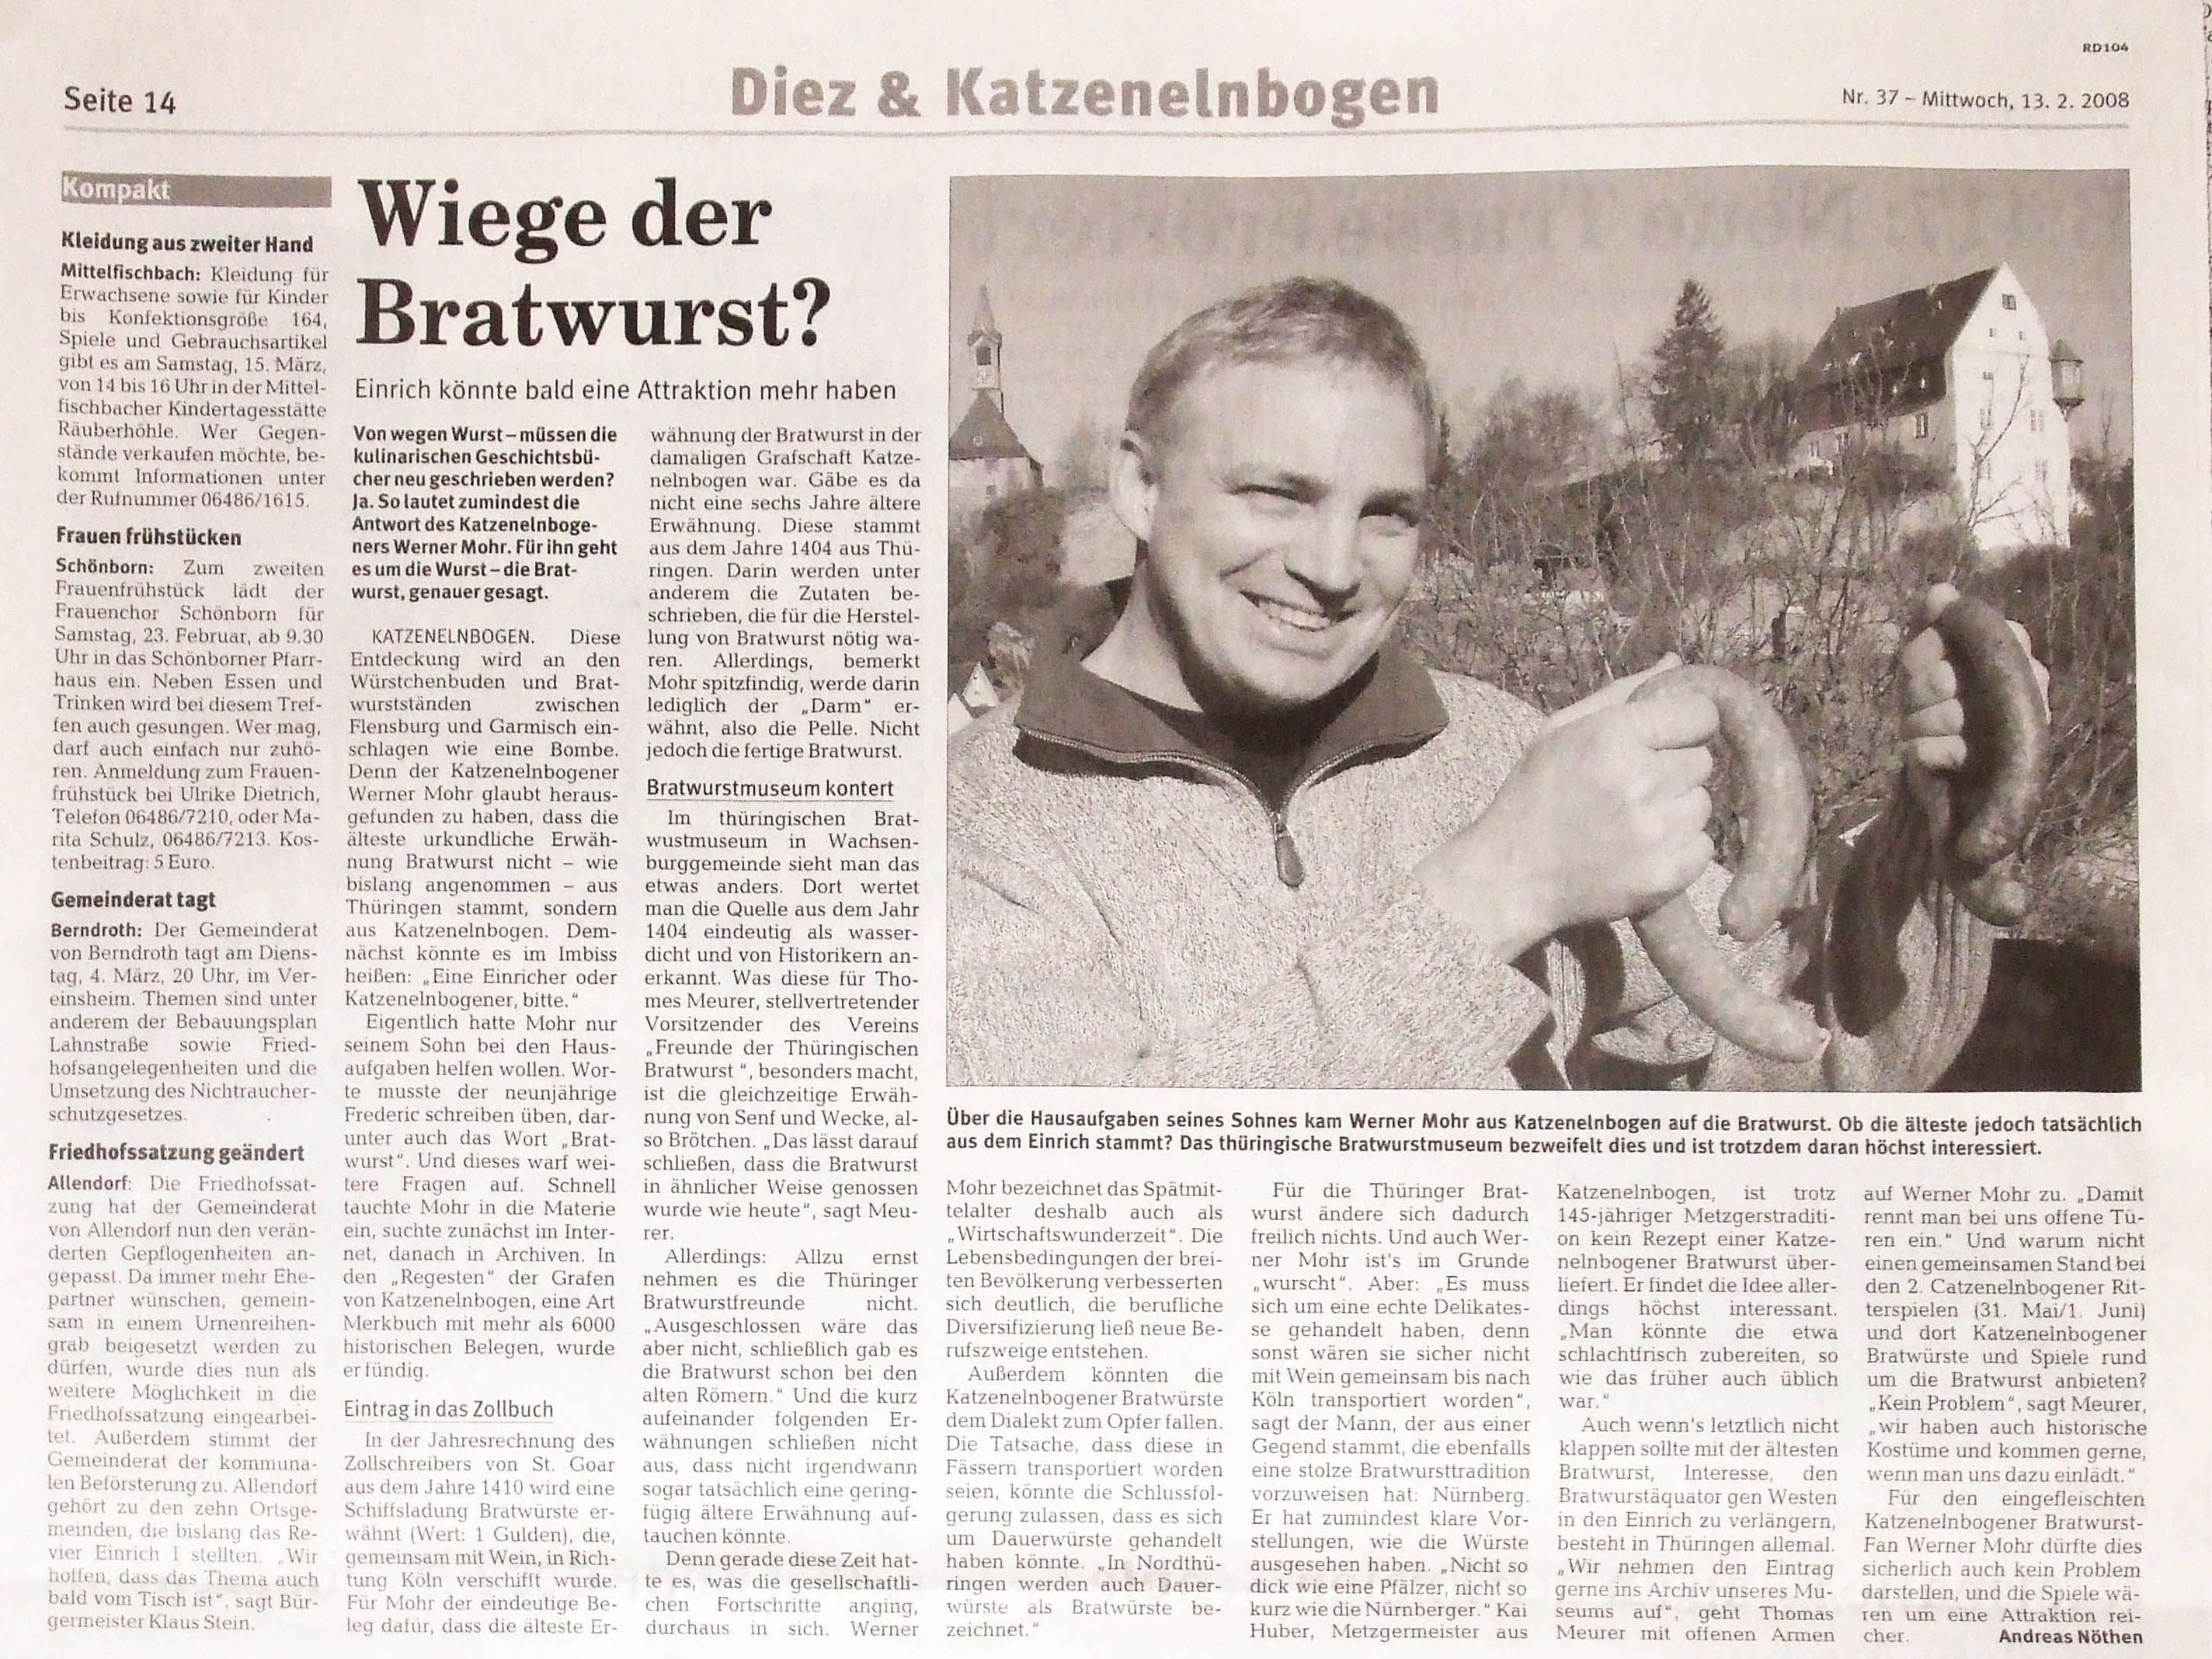 Ausgabe der Rhein-Lahn-Zeitung mit dem Artikel über Werner Mohr mit katzenelnbogener Bratwürsten - zu Vergrößerung benutzen sie die Tastenkombination Strg+